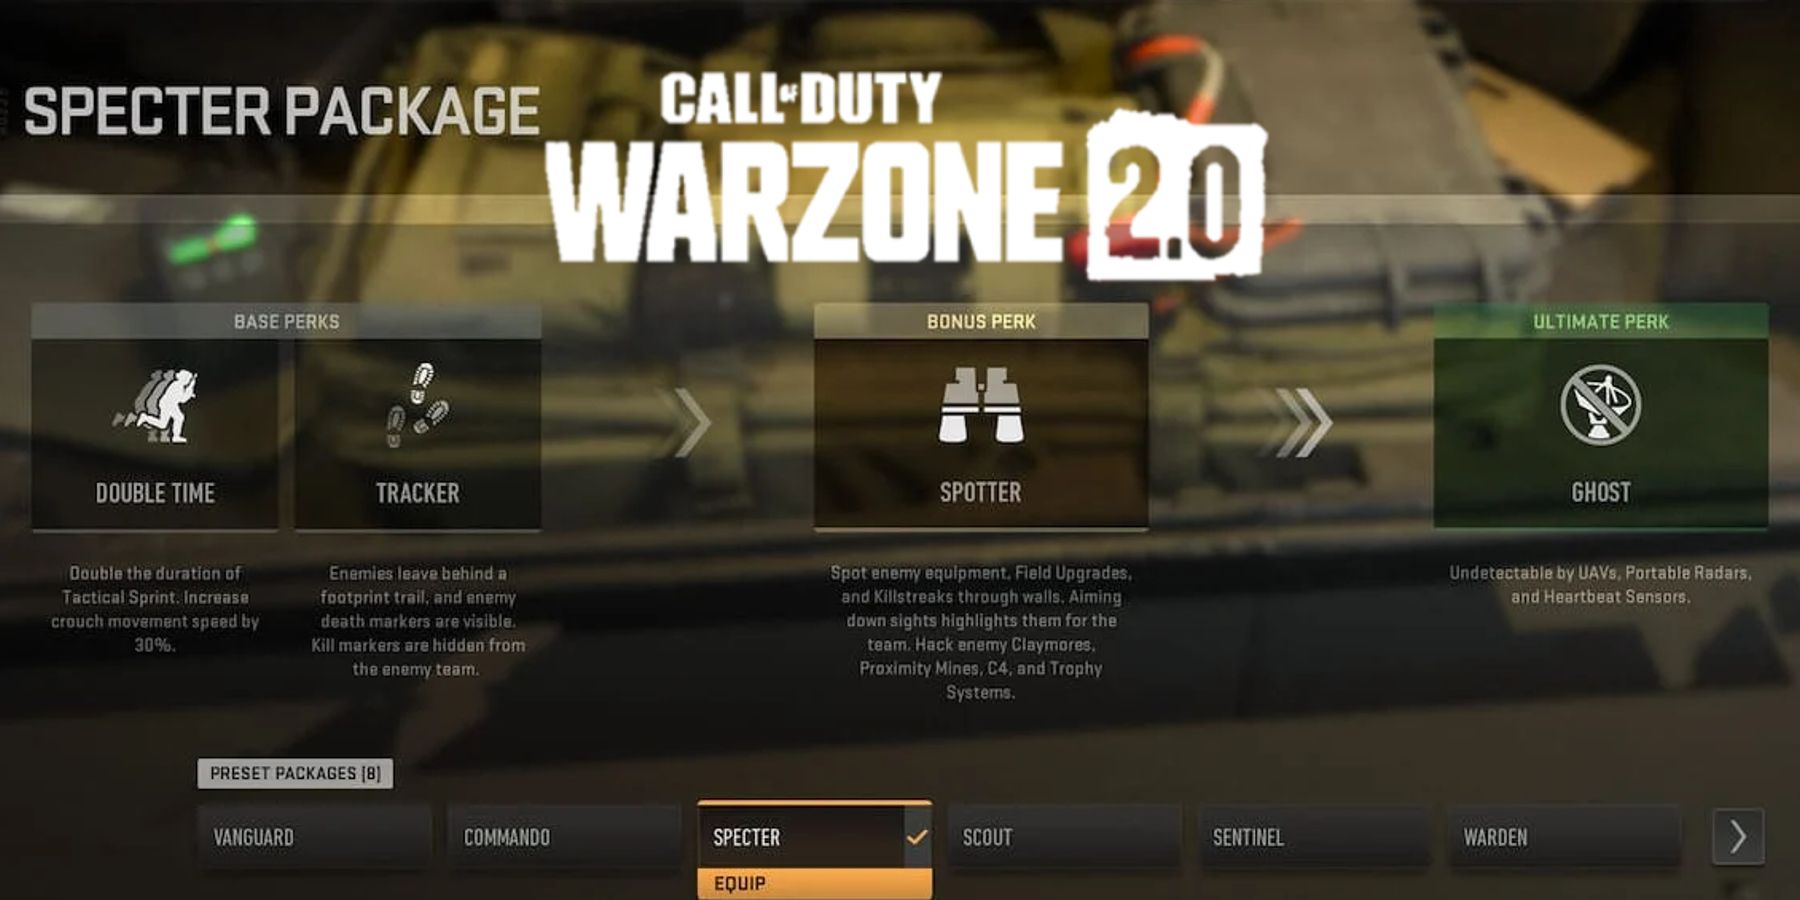 Warzone 2 Base, Bonus, and Ultimate Perks Explained